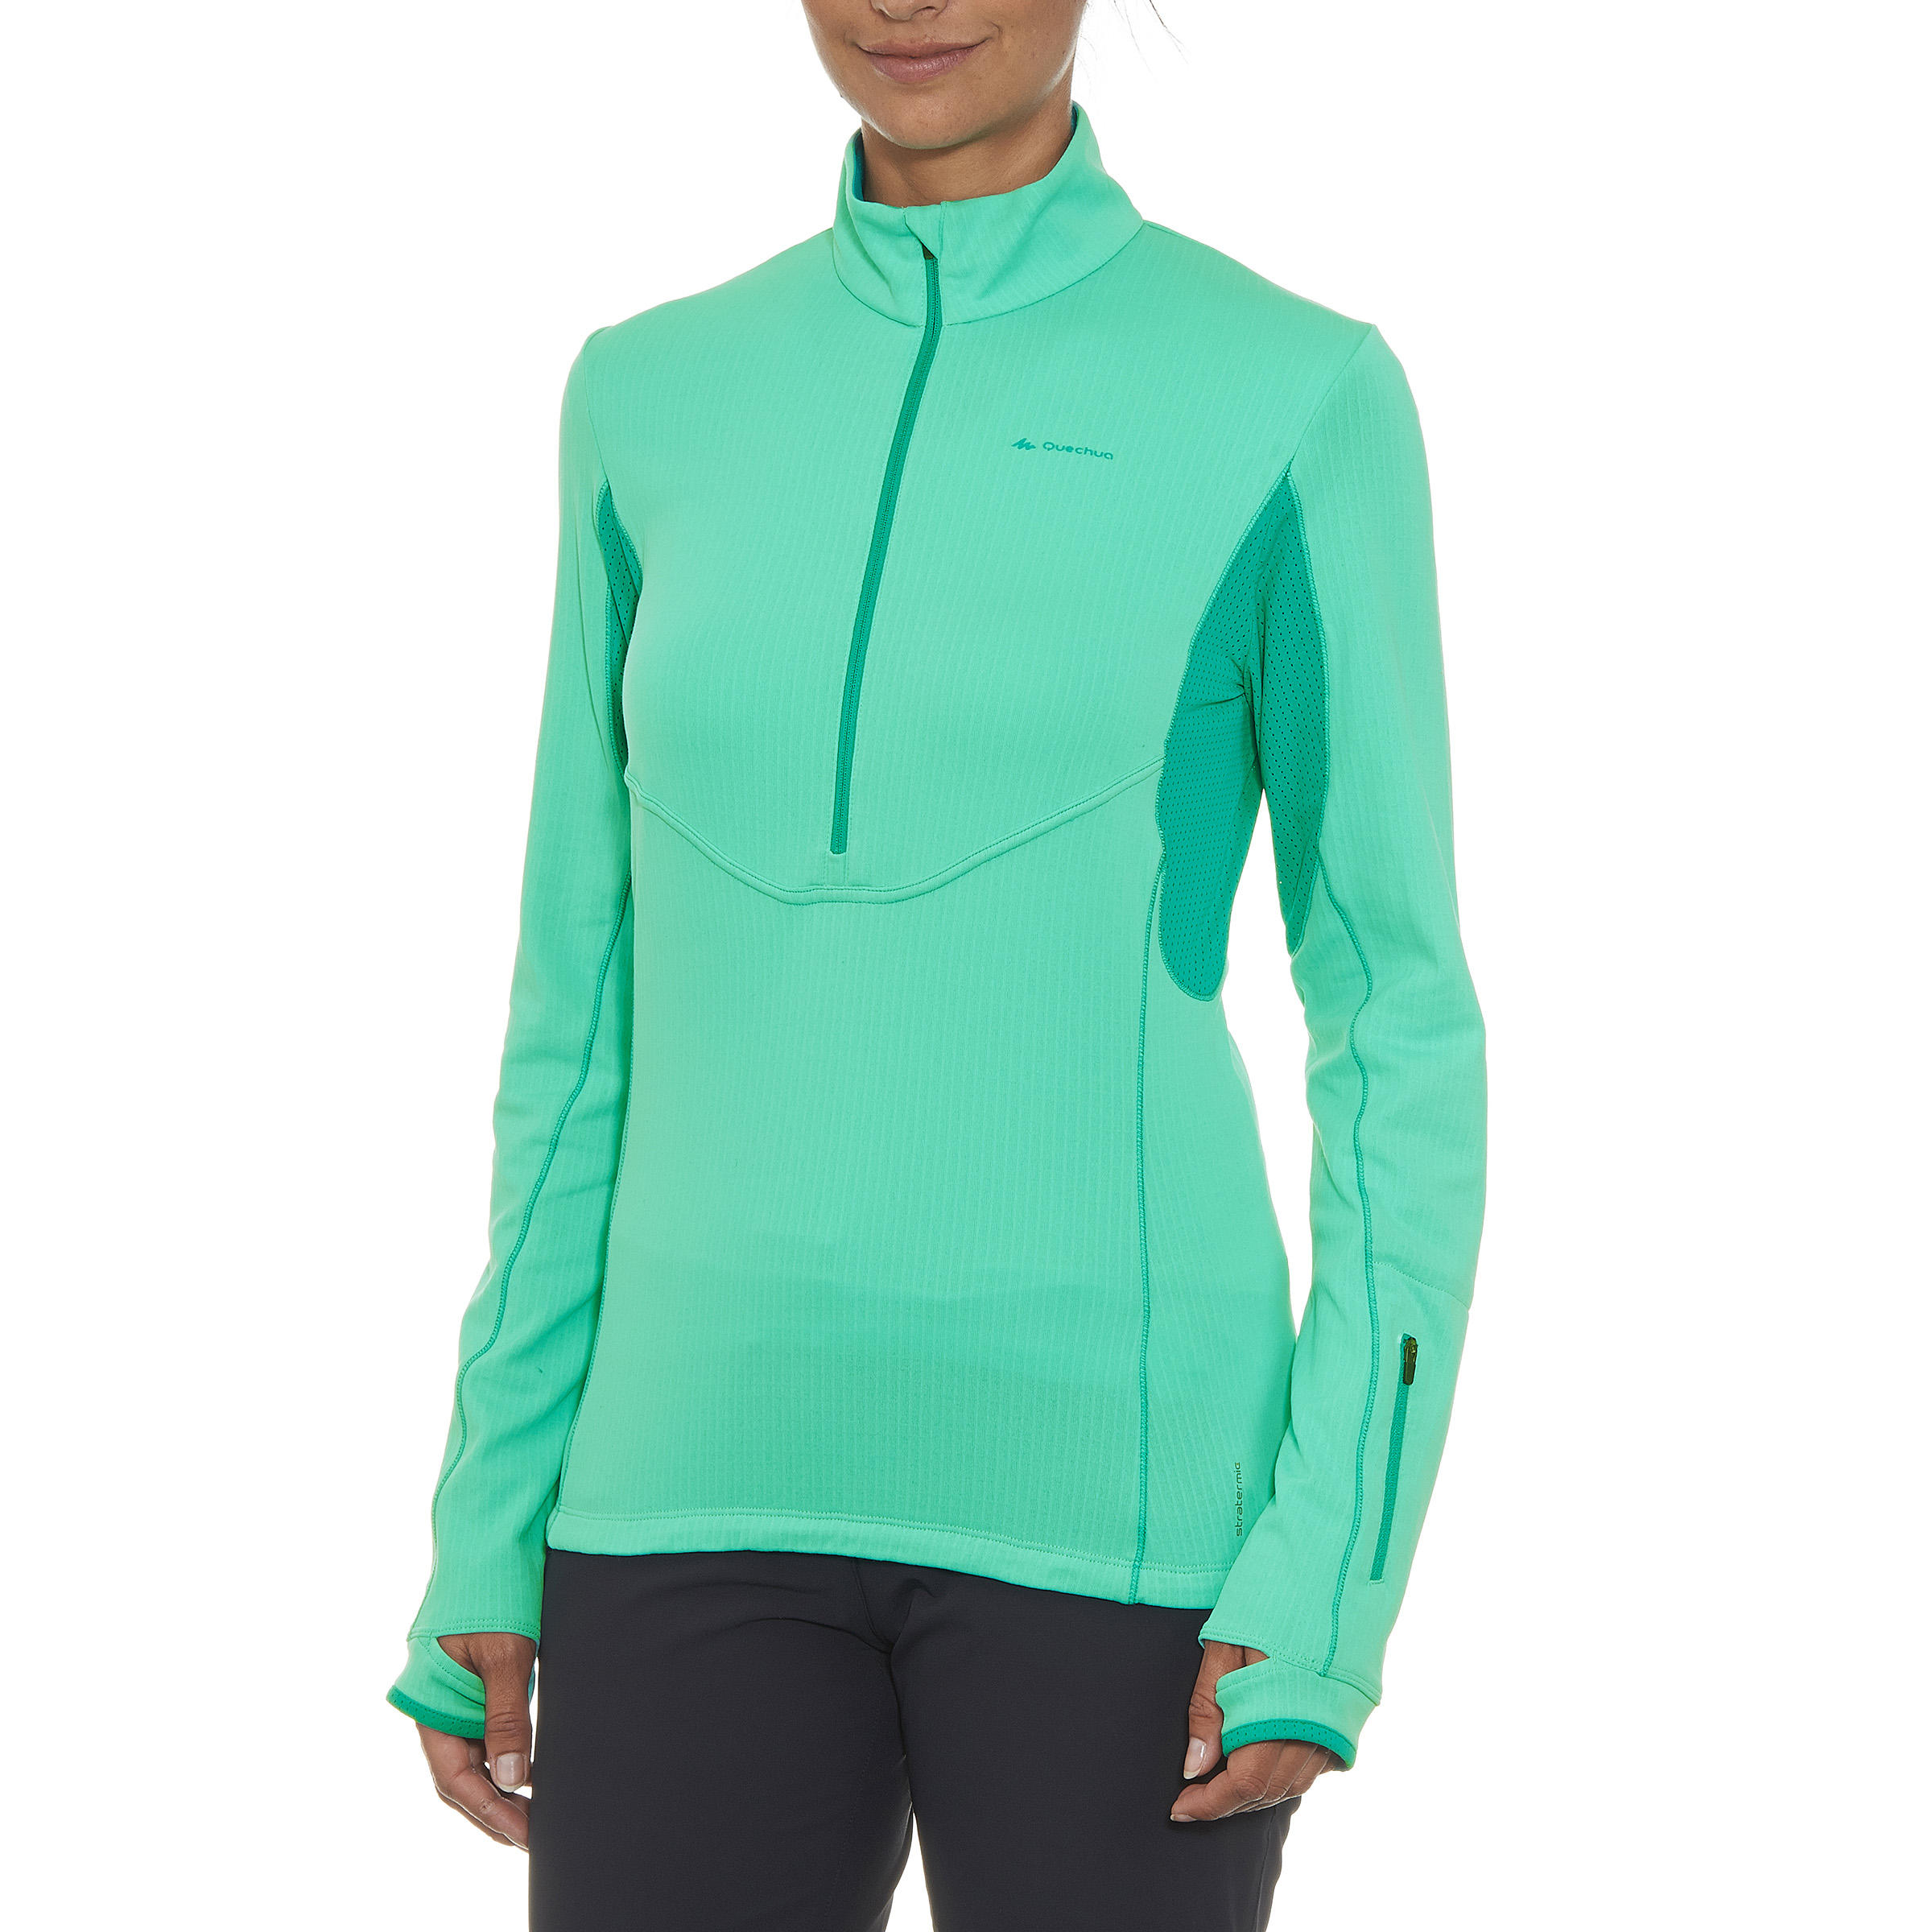 QUECHUA Forclaz 900 Women's Long-Sleeved Warm Hiking T-Shirt - Light Green